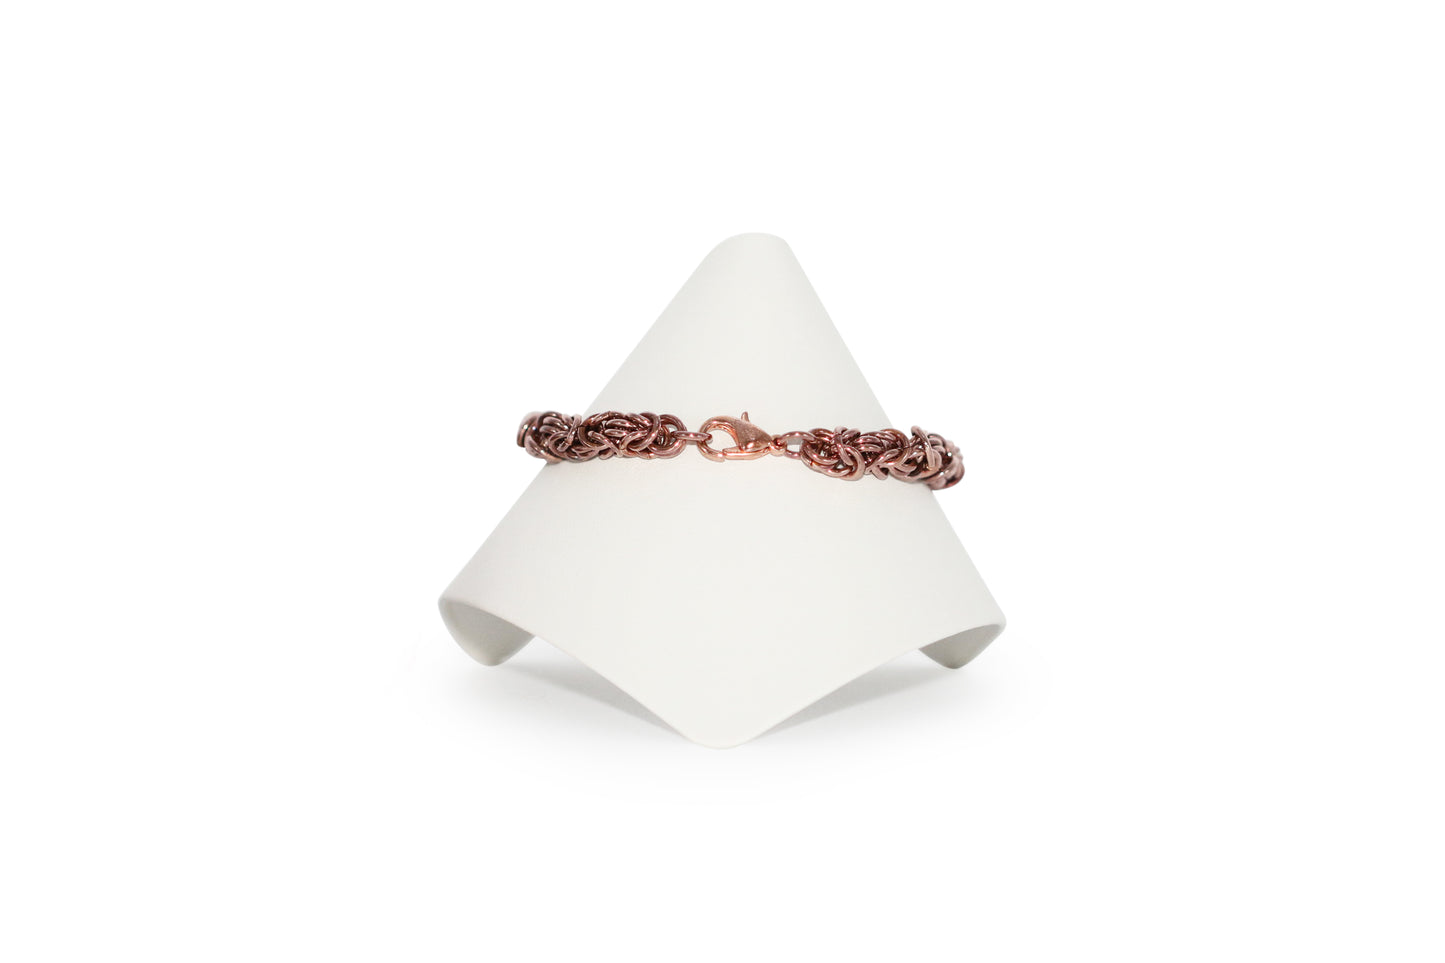 Copper Byzantine Bracelet